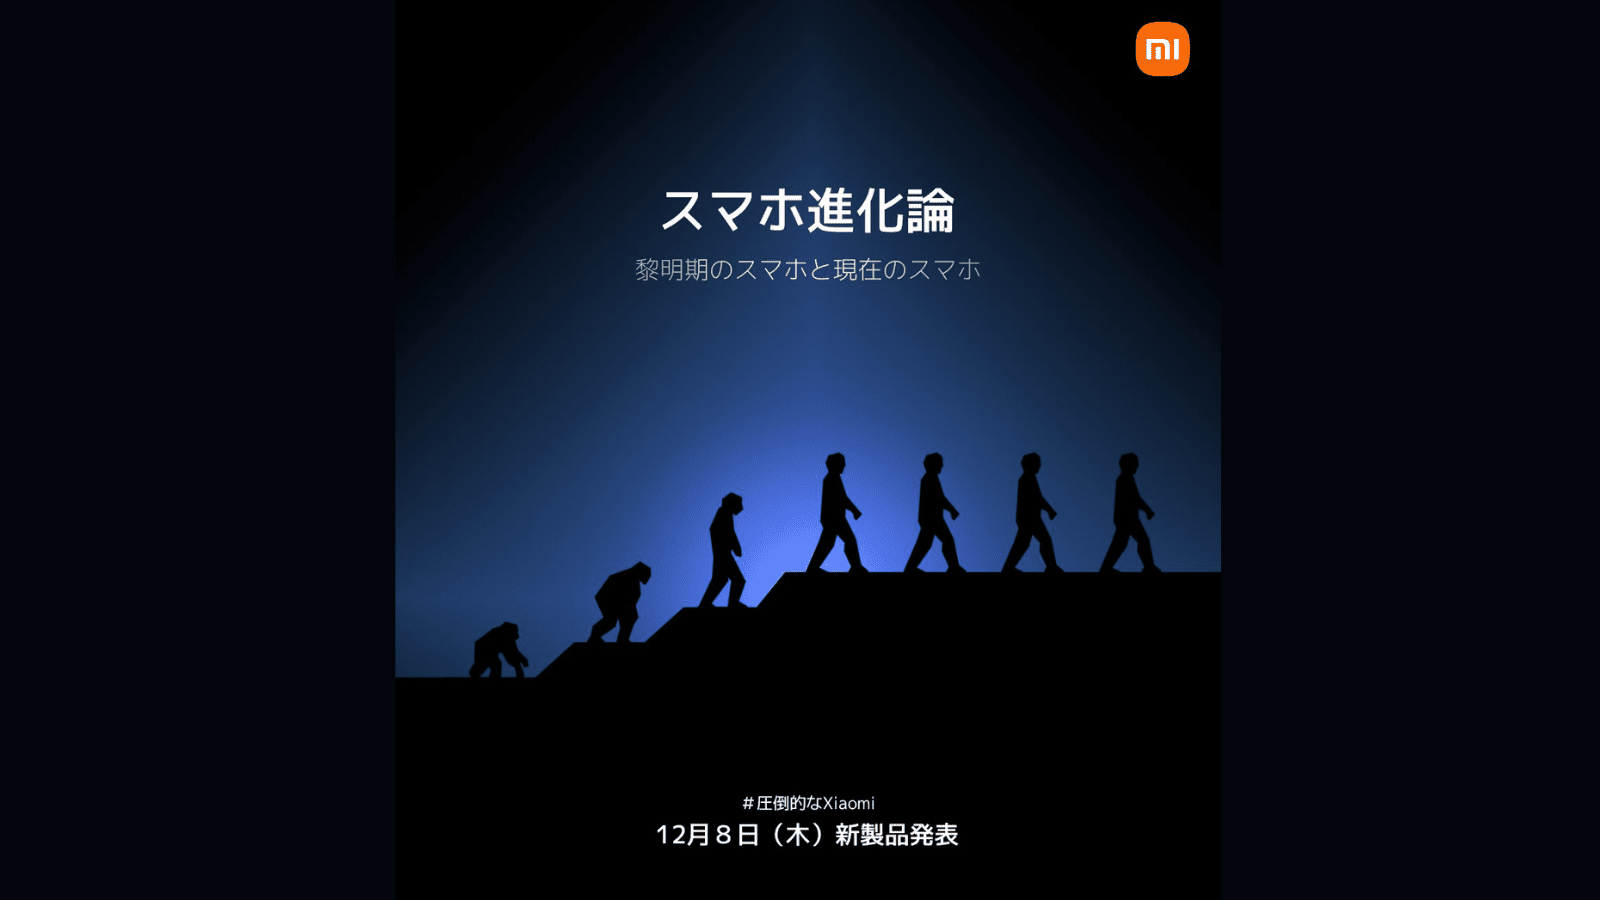 Ошеломляющее мероприятие по презентации продукта Xiaomi будет организовано 8 декабря в Японии